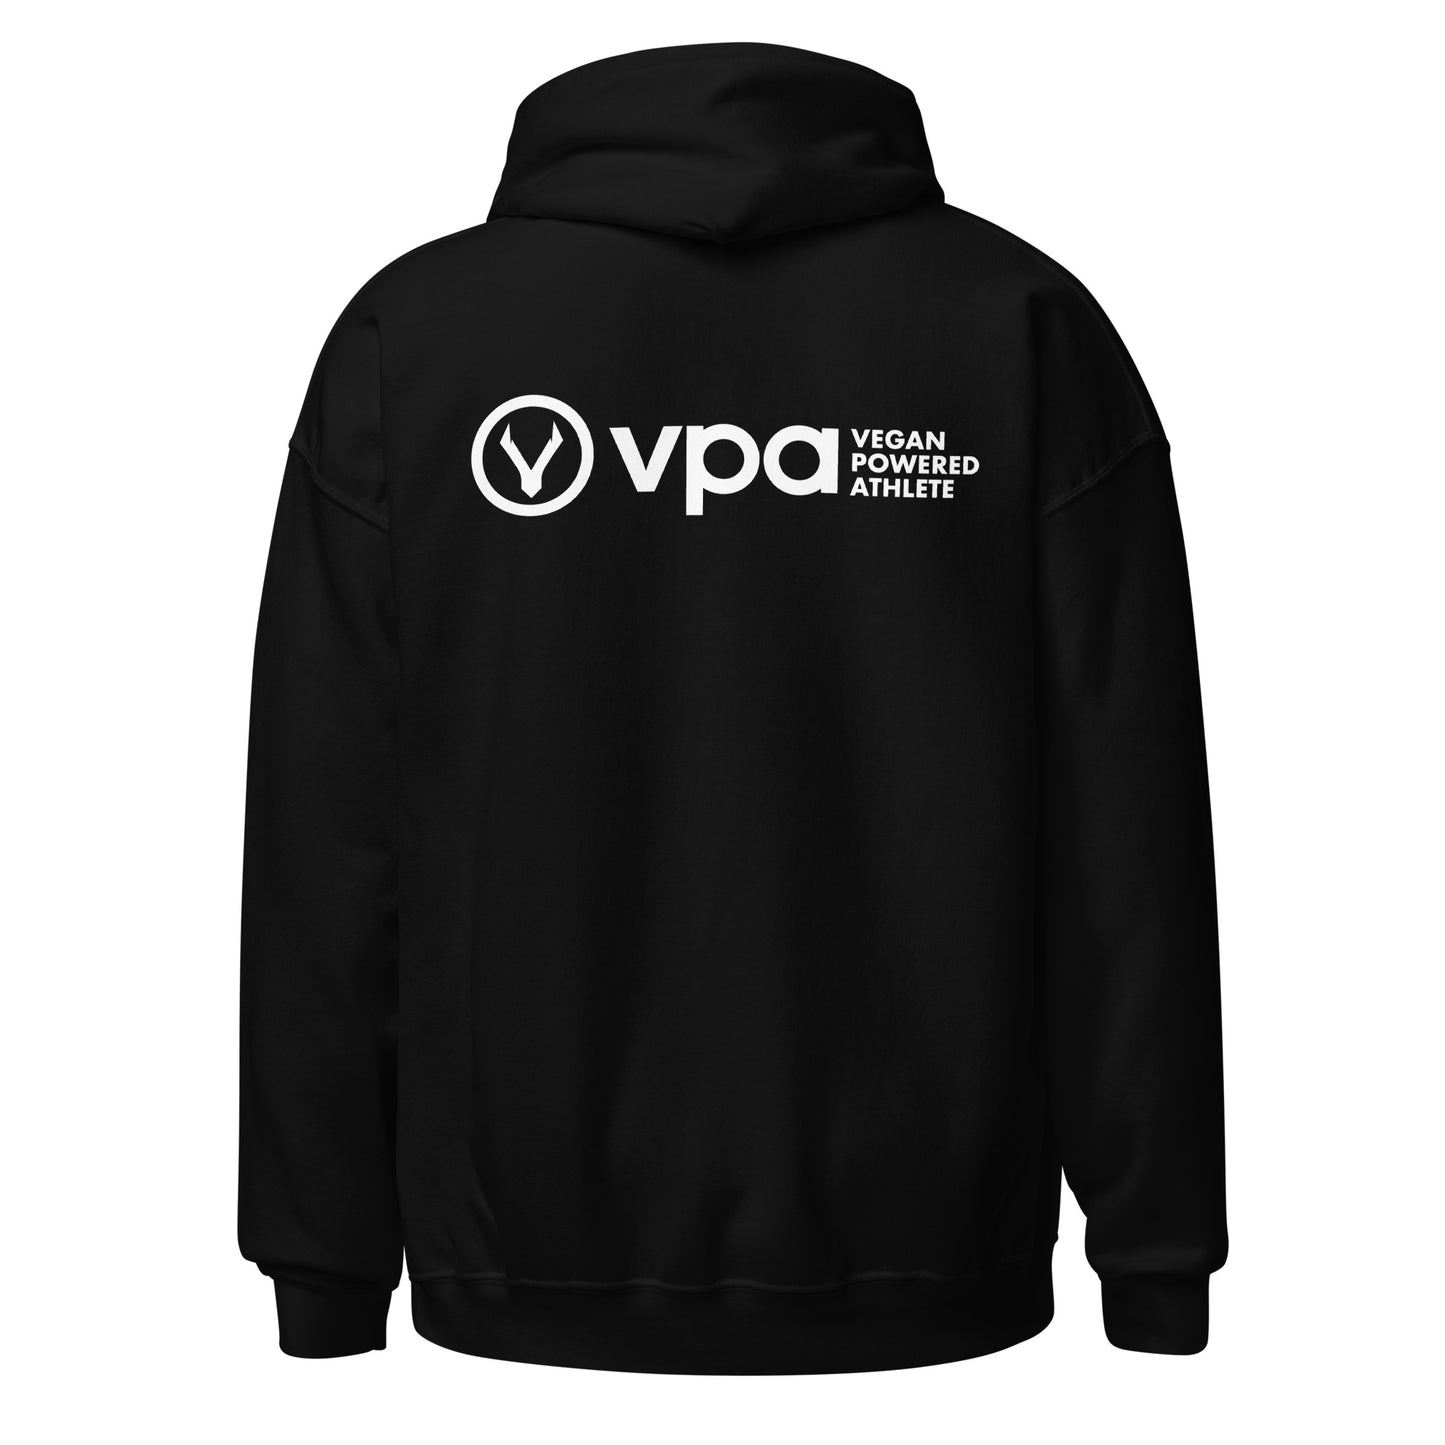 VPA Vegan Powered Athlete Unisex Hoodie